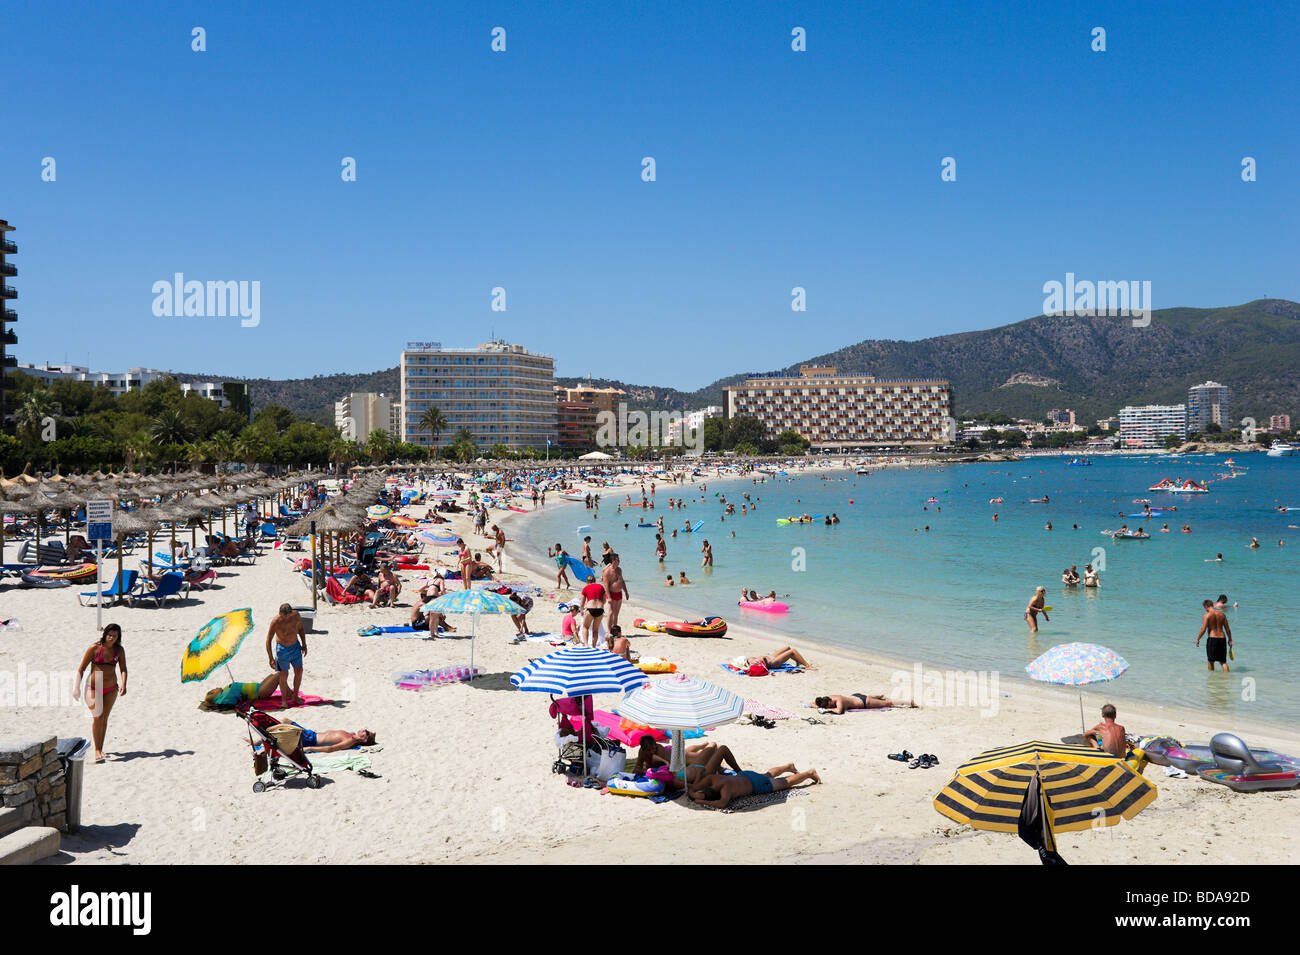 The main beach at Palmanova, Bay of Palma, South Coast, Mallorca, Balearic Islands, Spain Stock Photo